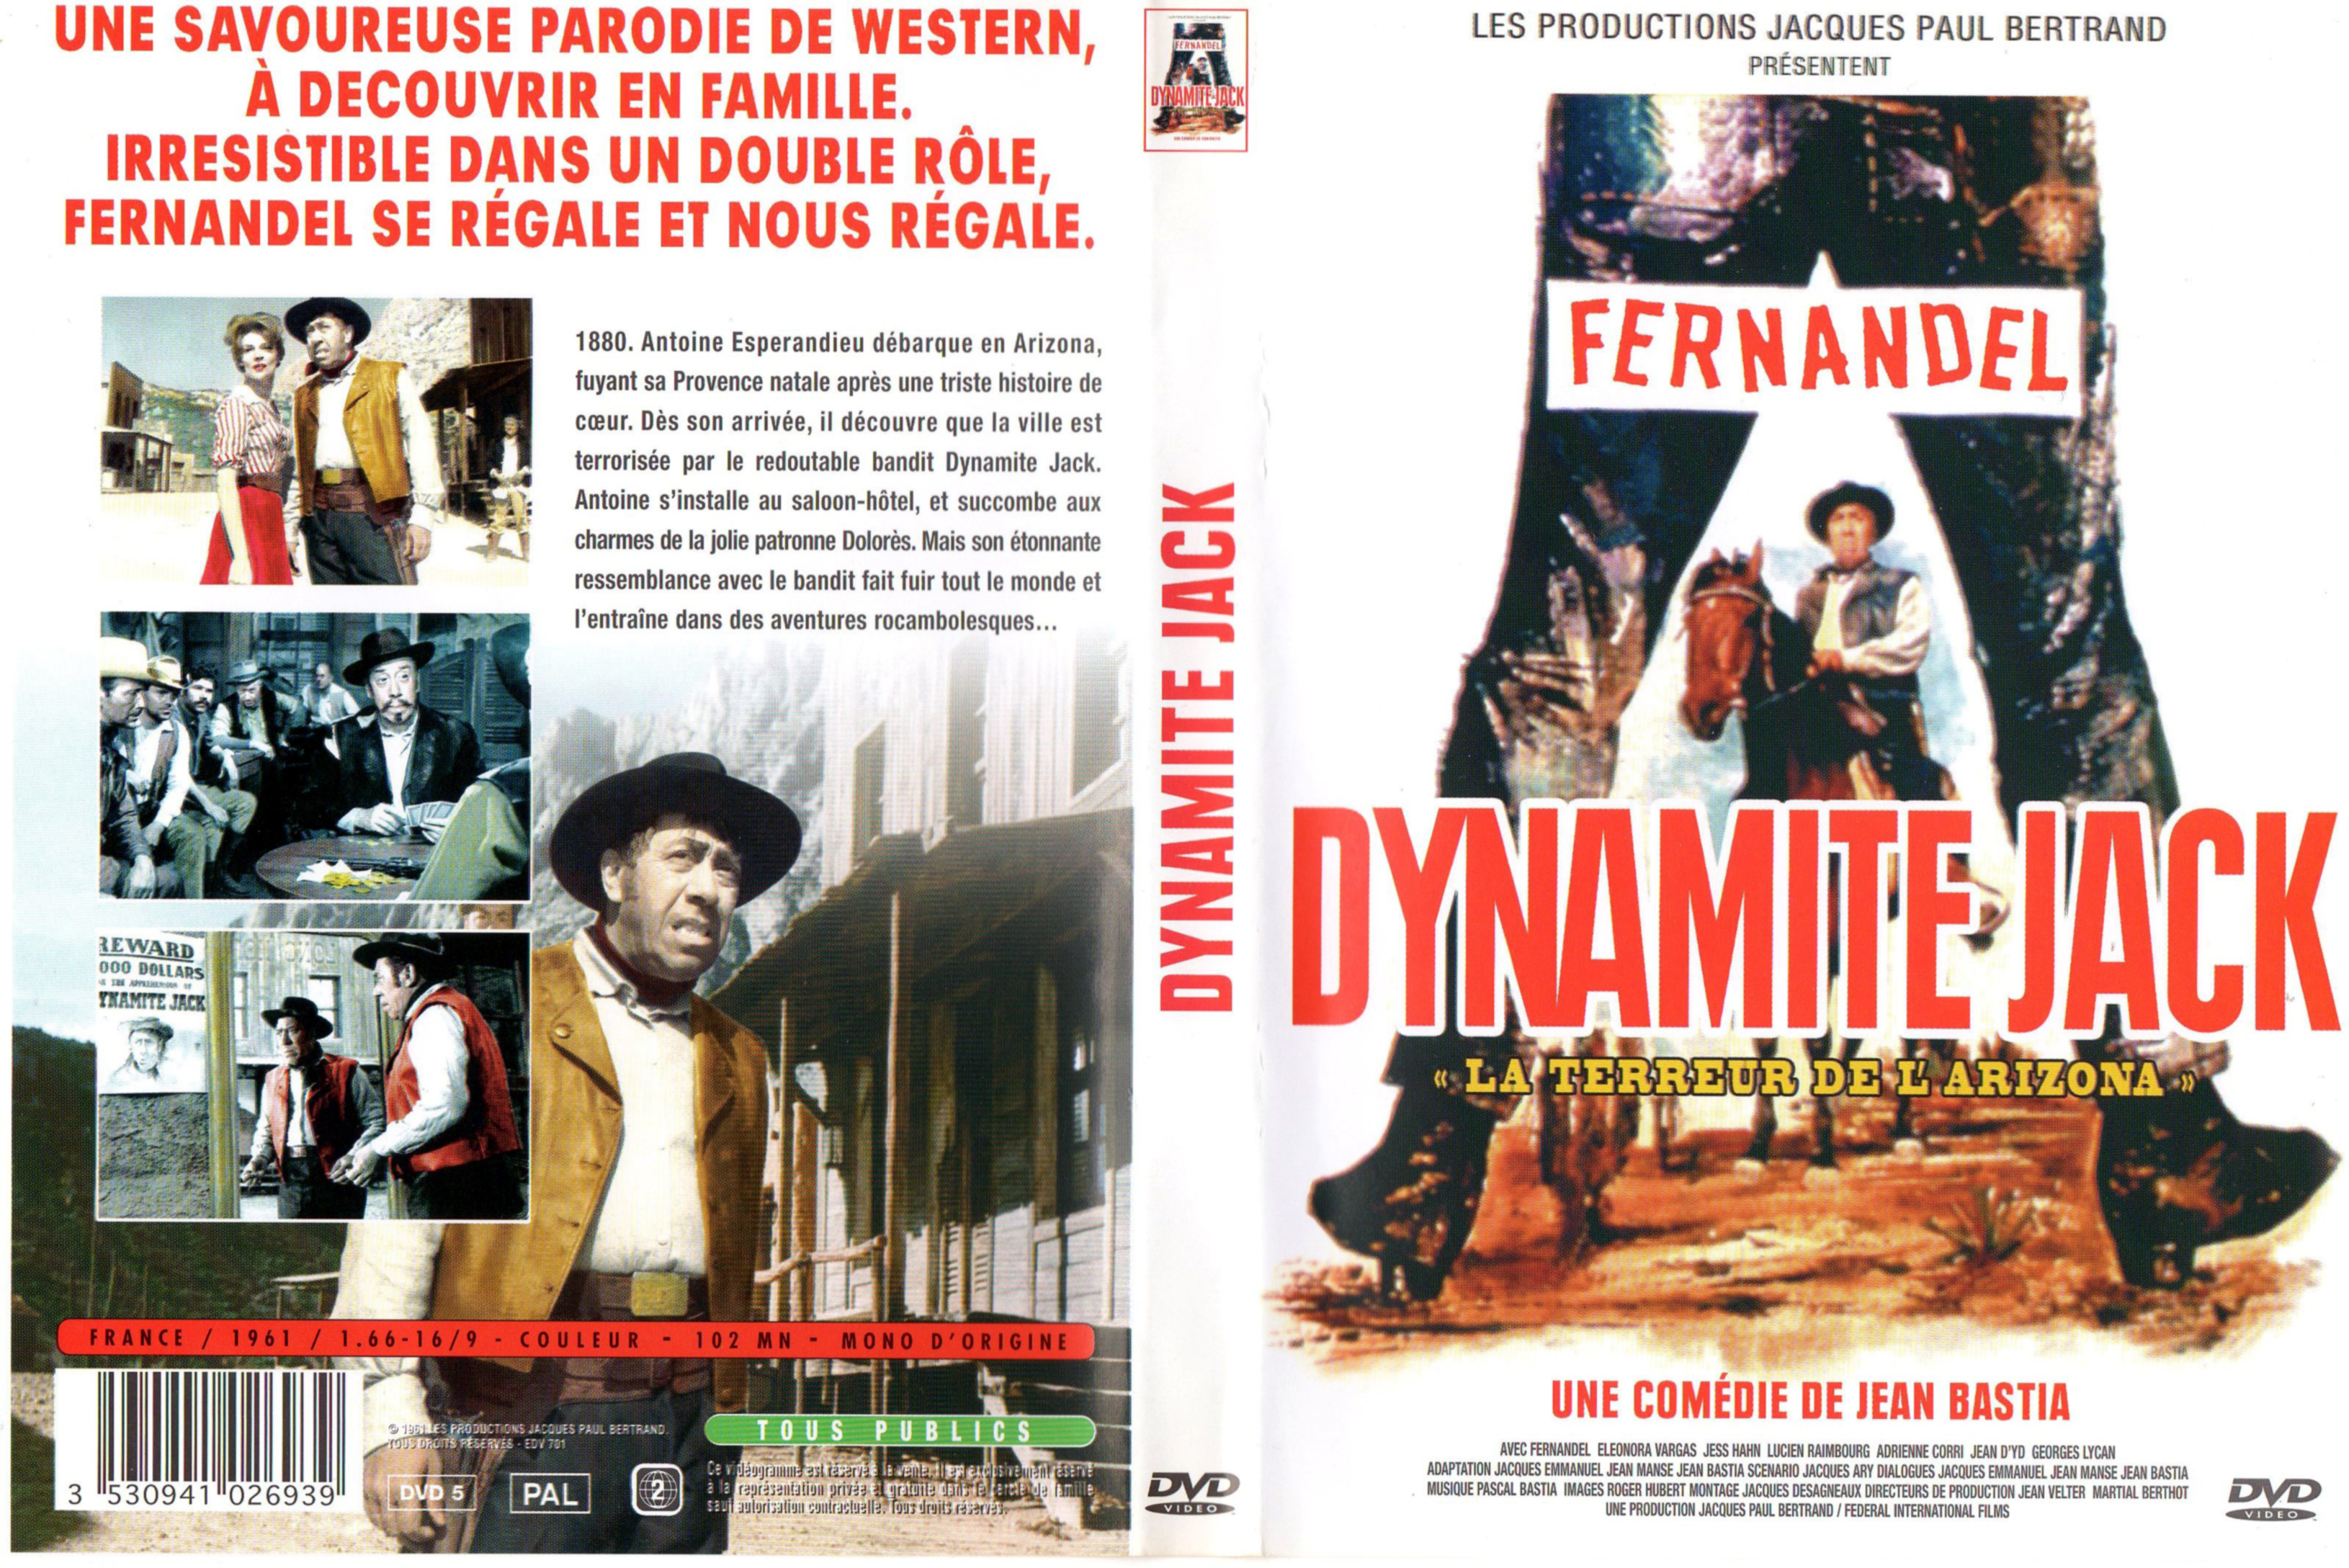 Jaquette DVD Dynamite Jack v2